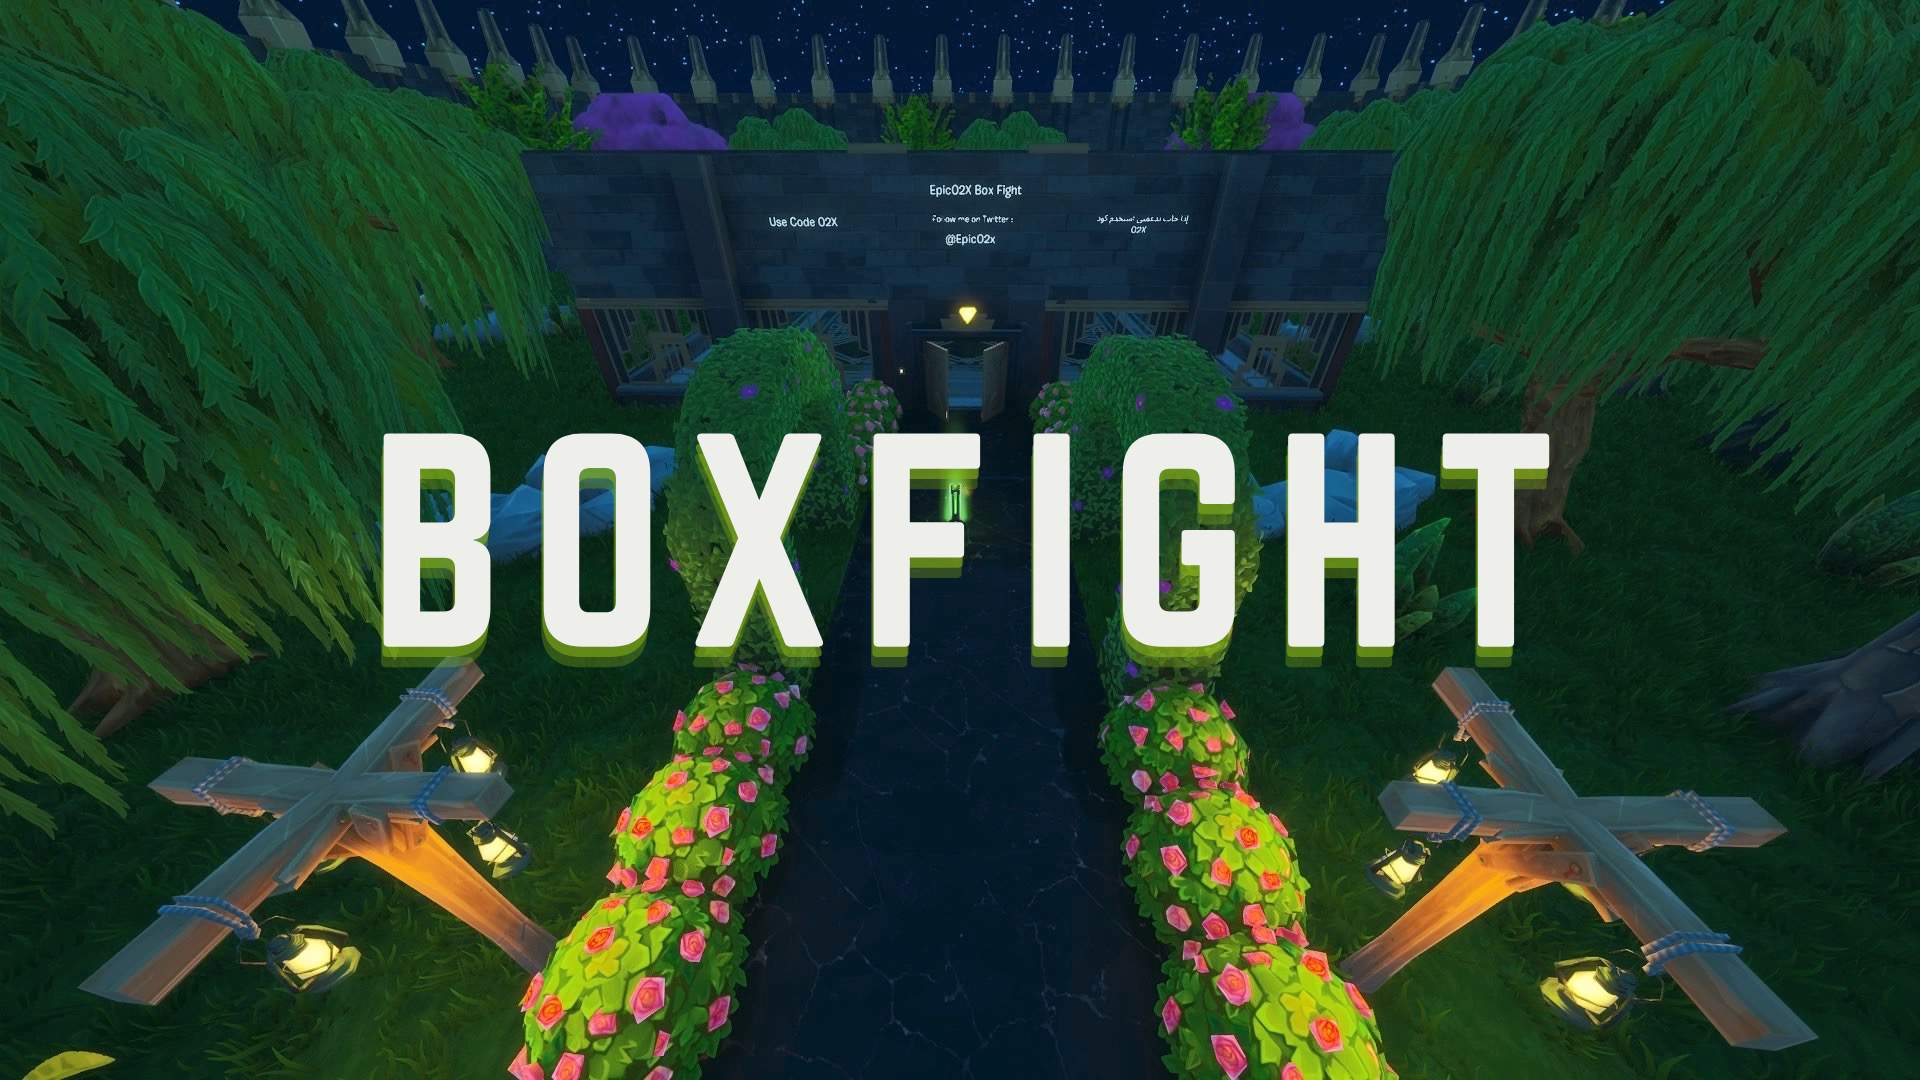 5v5 Box Fight Code BOXFIGHT 1V1/2V2/3V3/4V4/5V5 - Fortnite Creative Map Code - Dropnite